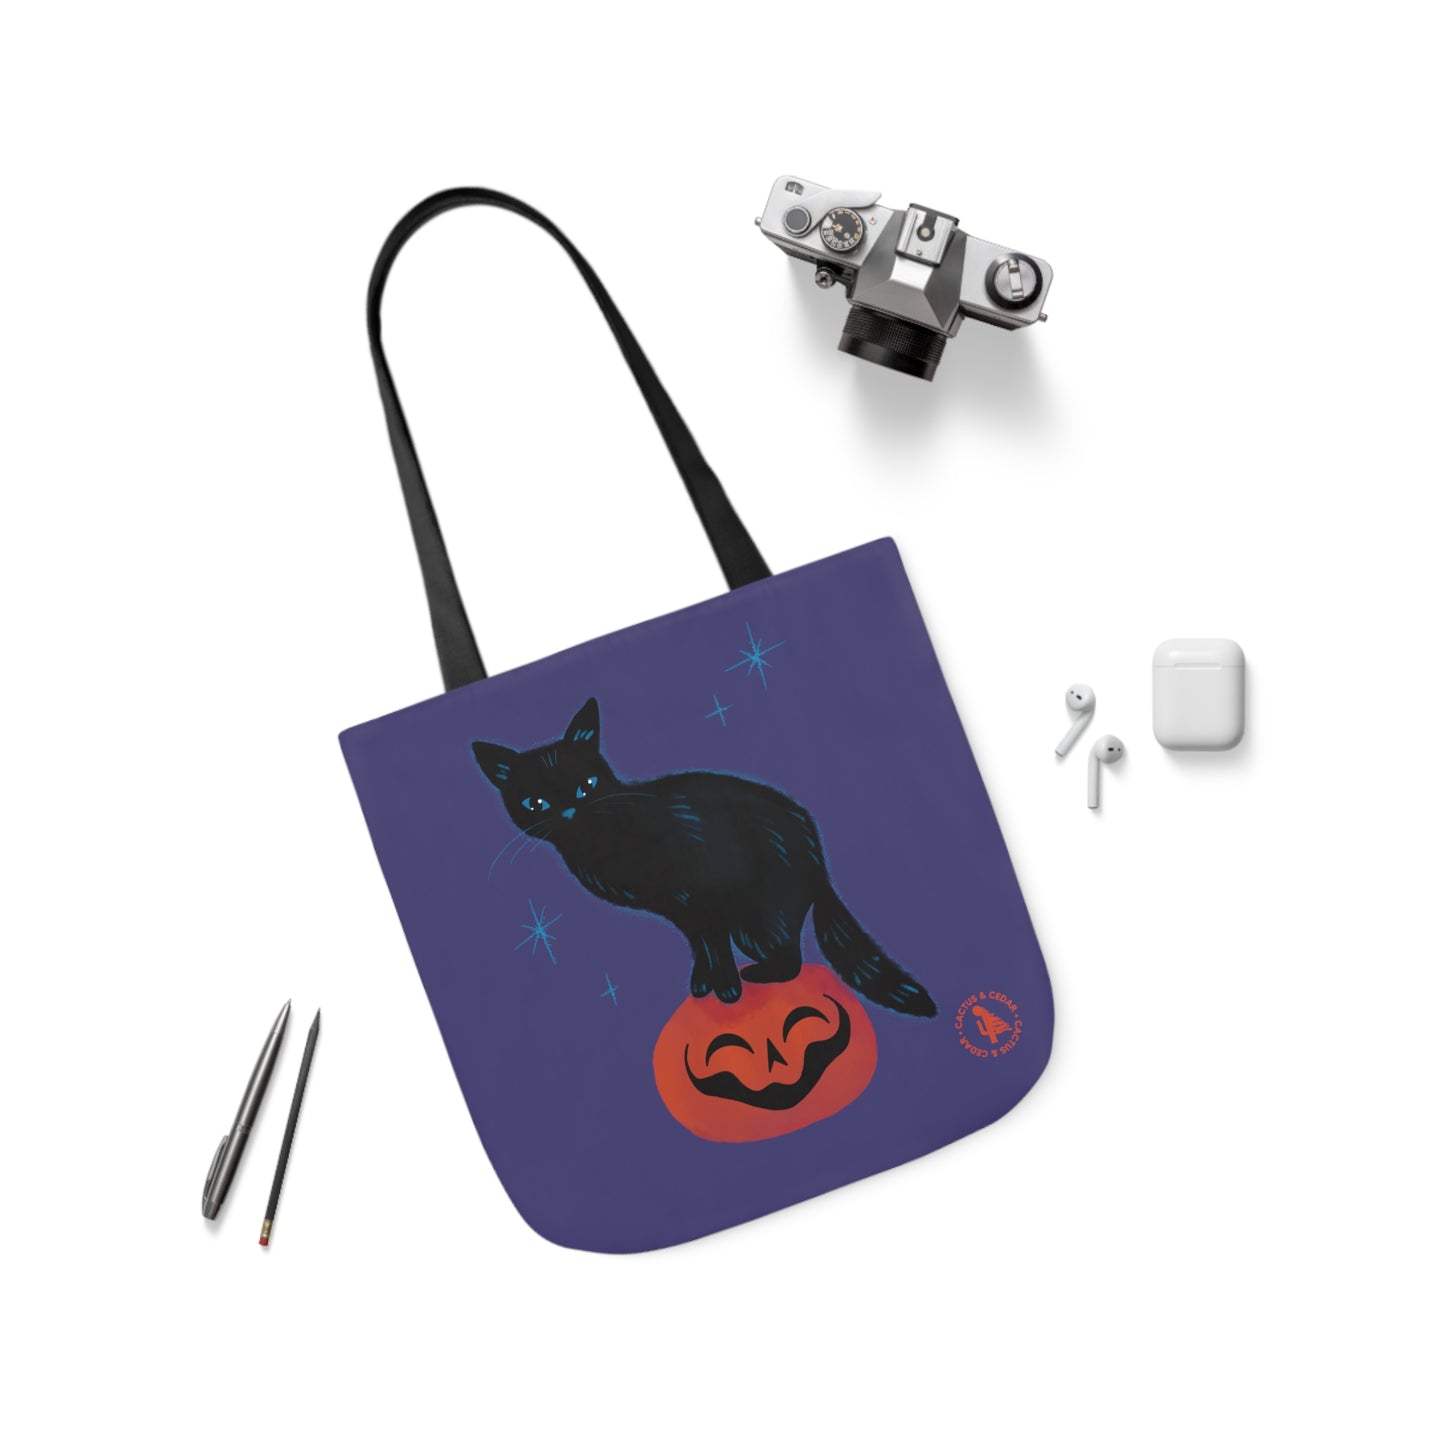 Pumpkin the Cat Tote Bag / Black Cat Tote Bag / Halloween Tote Bags